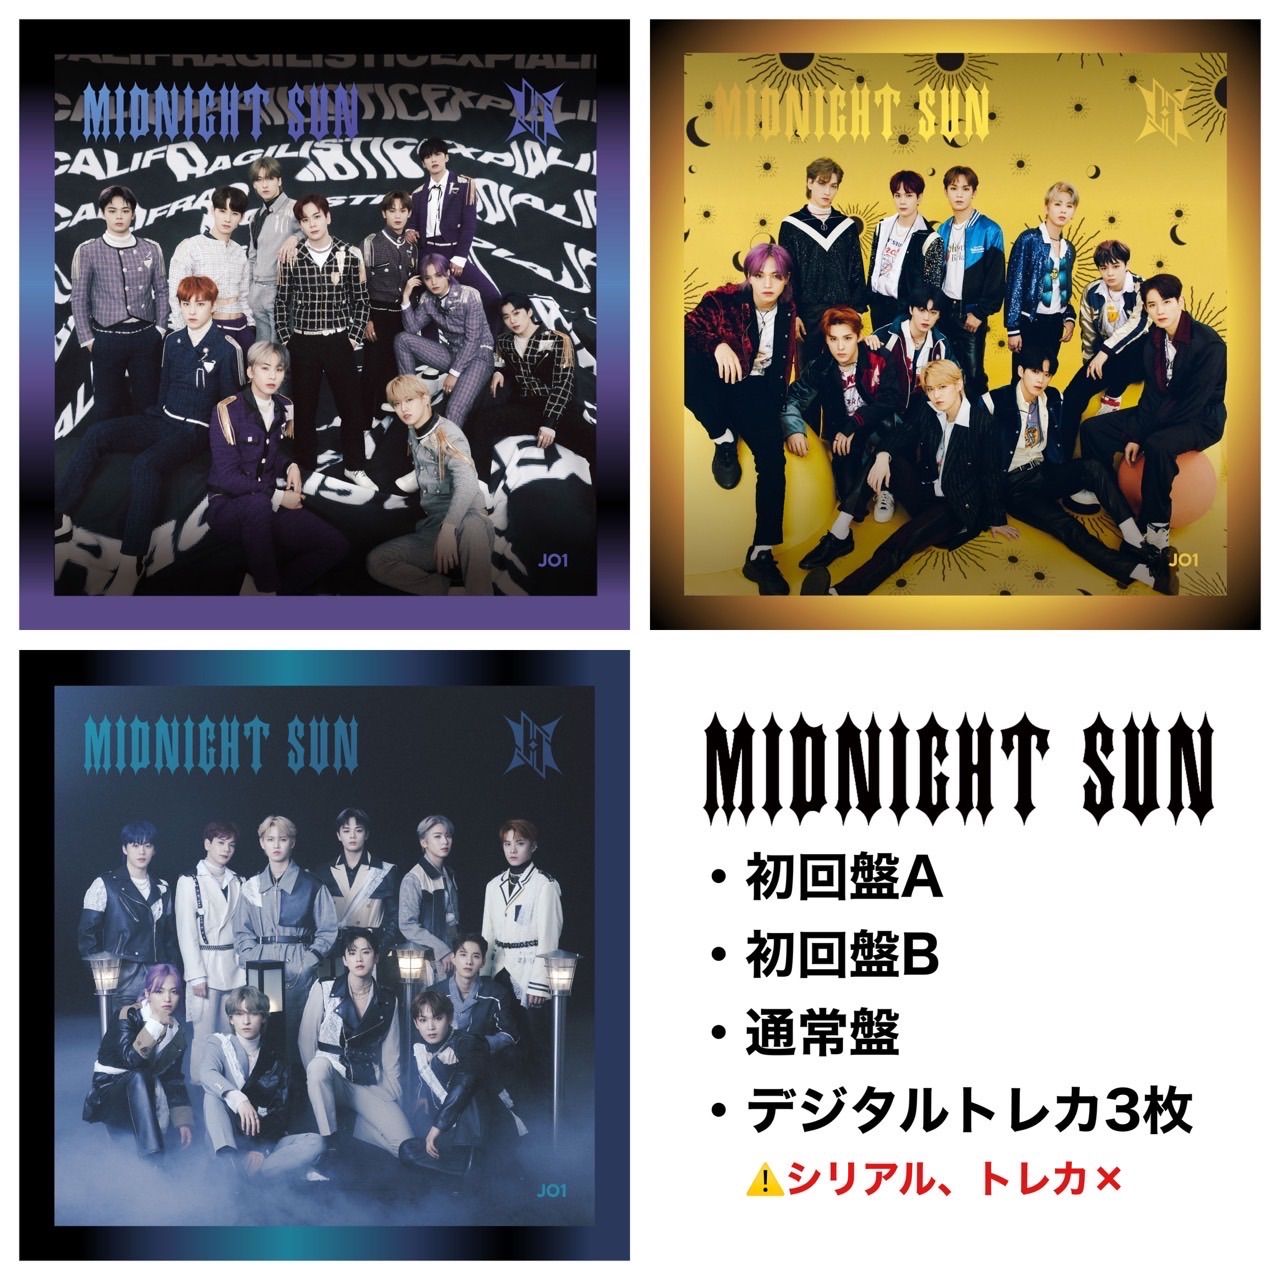 JO1 6thシングル MIDNIGHTSUN CD 3形態セット - メルカリ